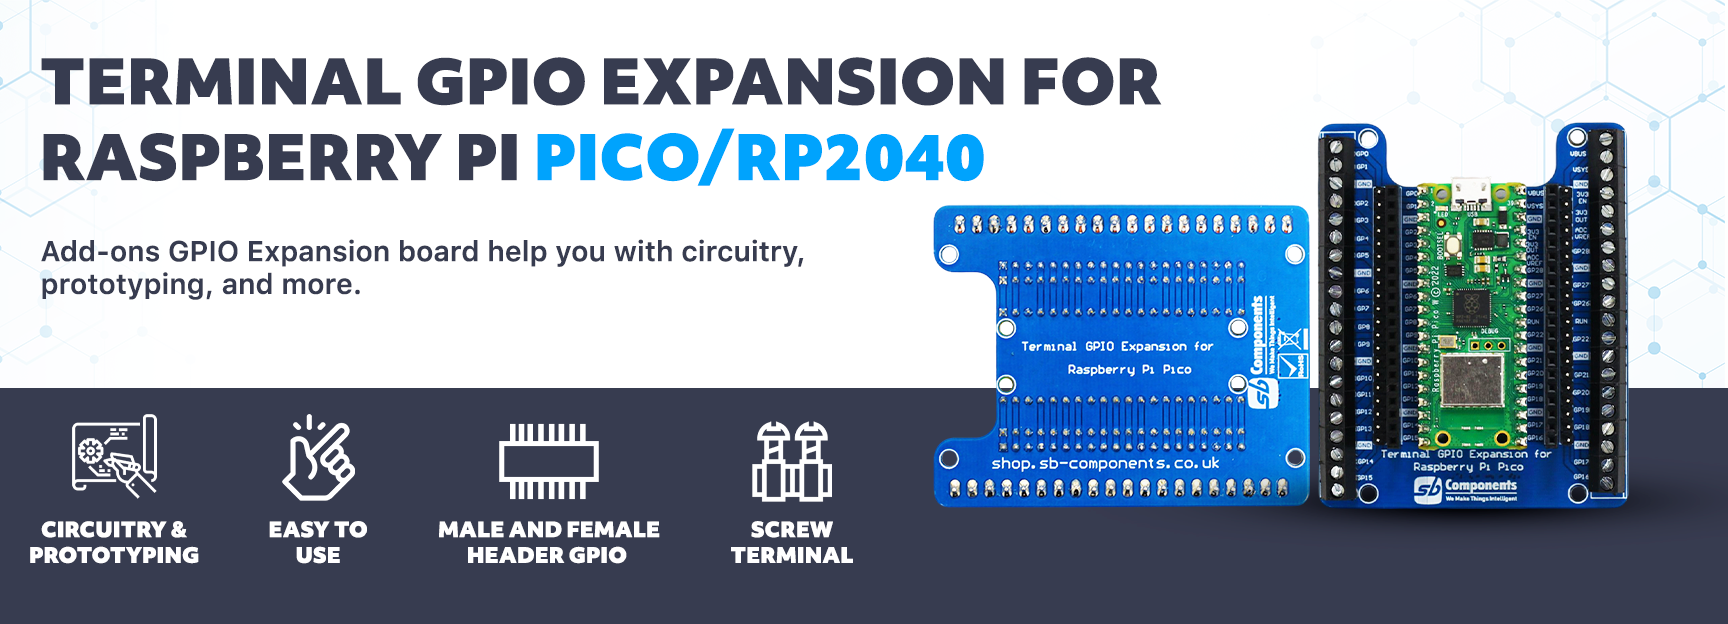 Terminal GPIO Expansion for Pico